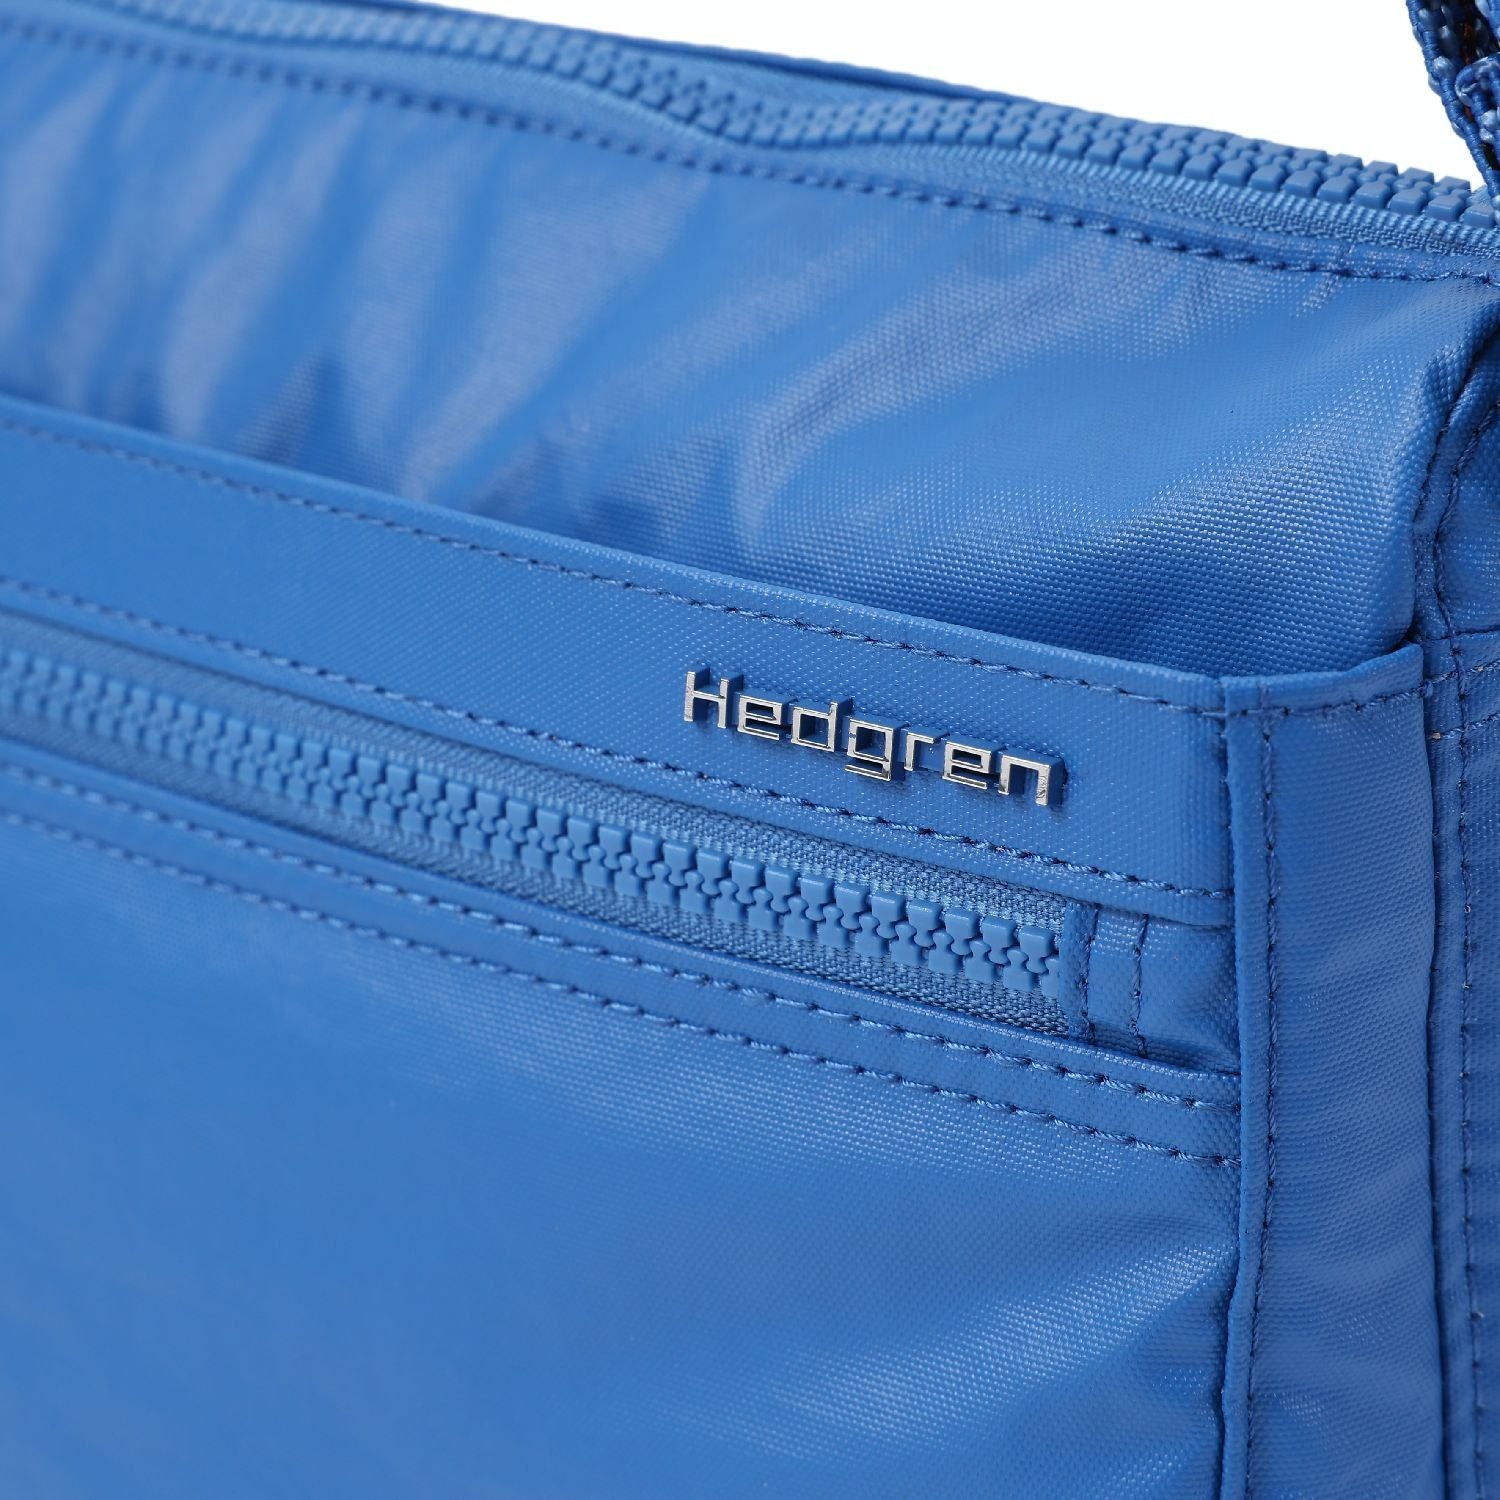 Hedgren EYE M - Medium Shoulder Bag with RIFD Pocket - rainbowbags